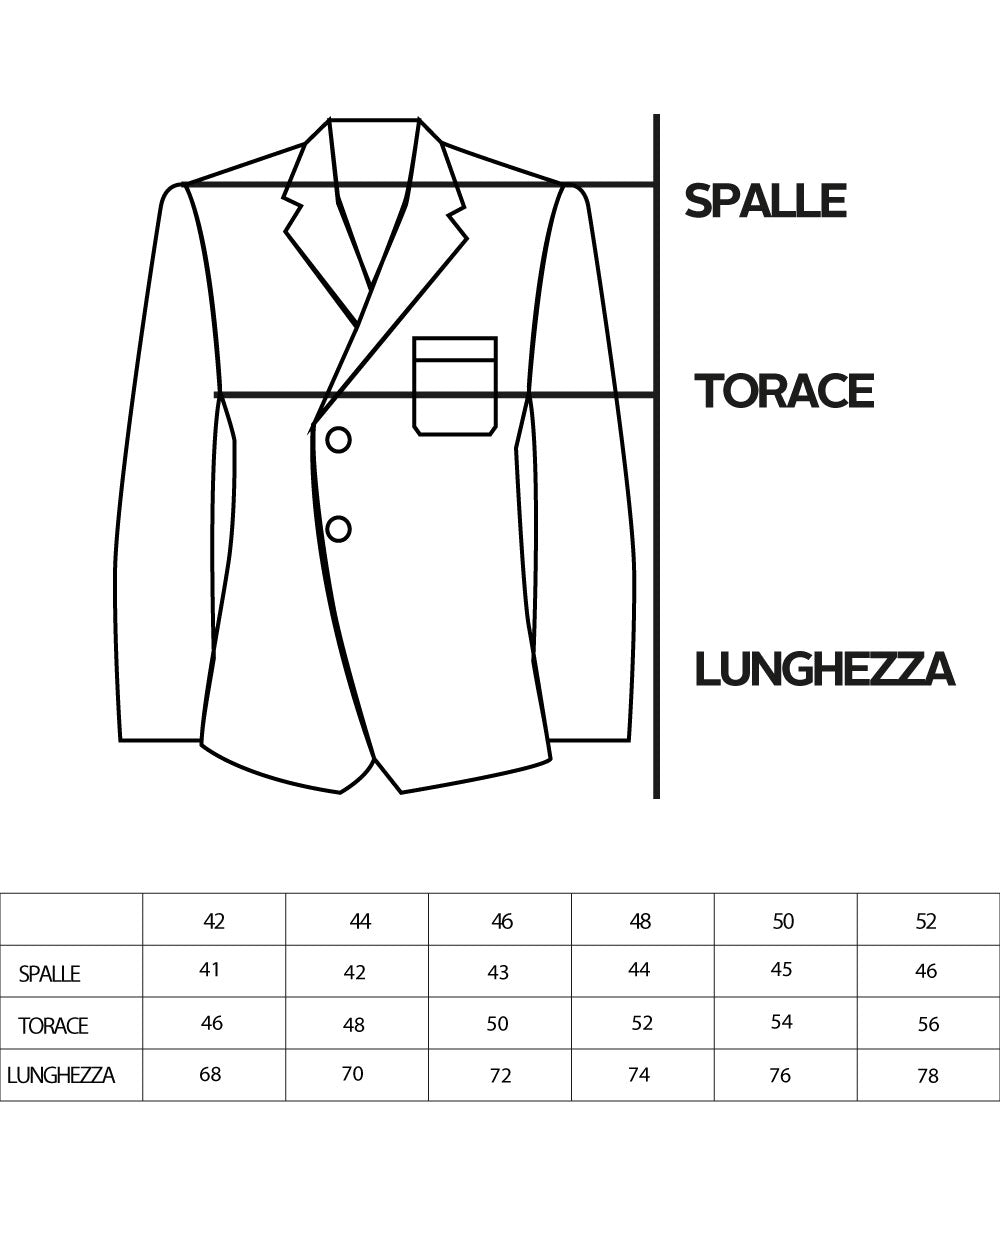 Double-Breasted Men's Suit Velvet Suit Suit Jacket Pants Cream Elegant Ceremony GIOSAL-OU2194A